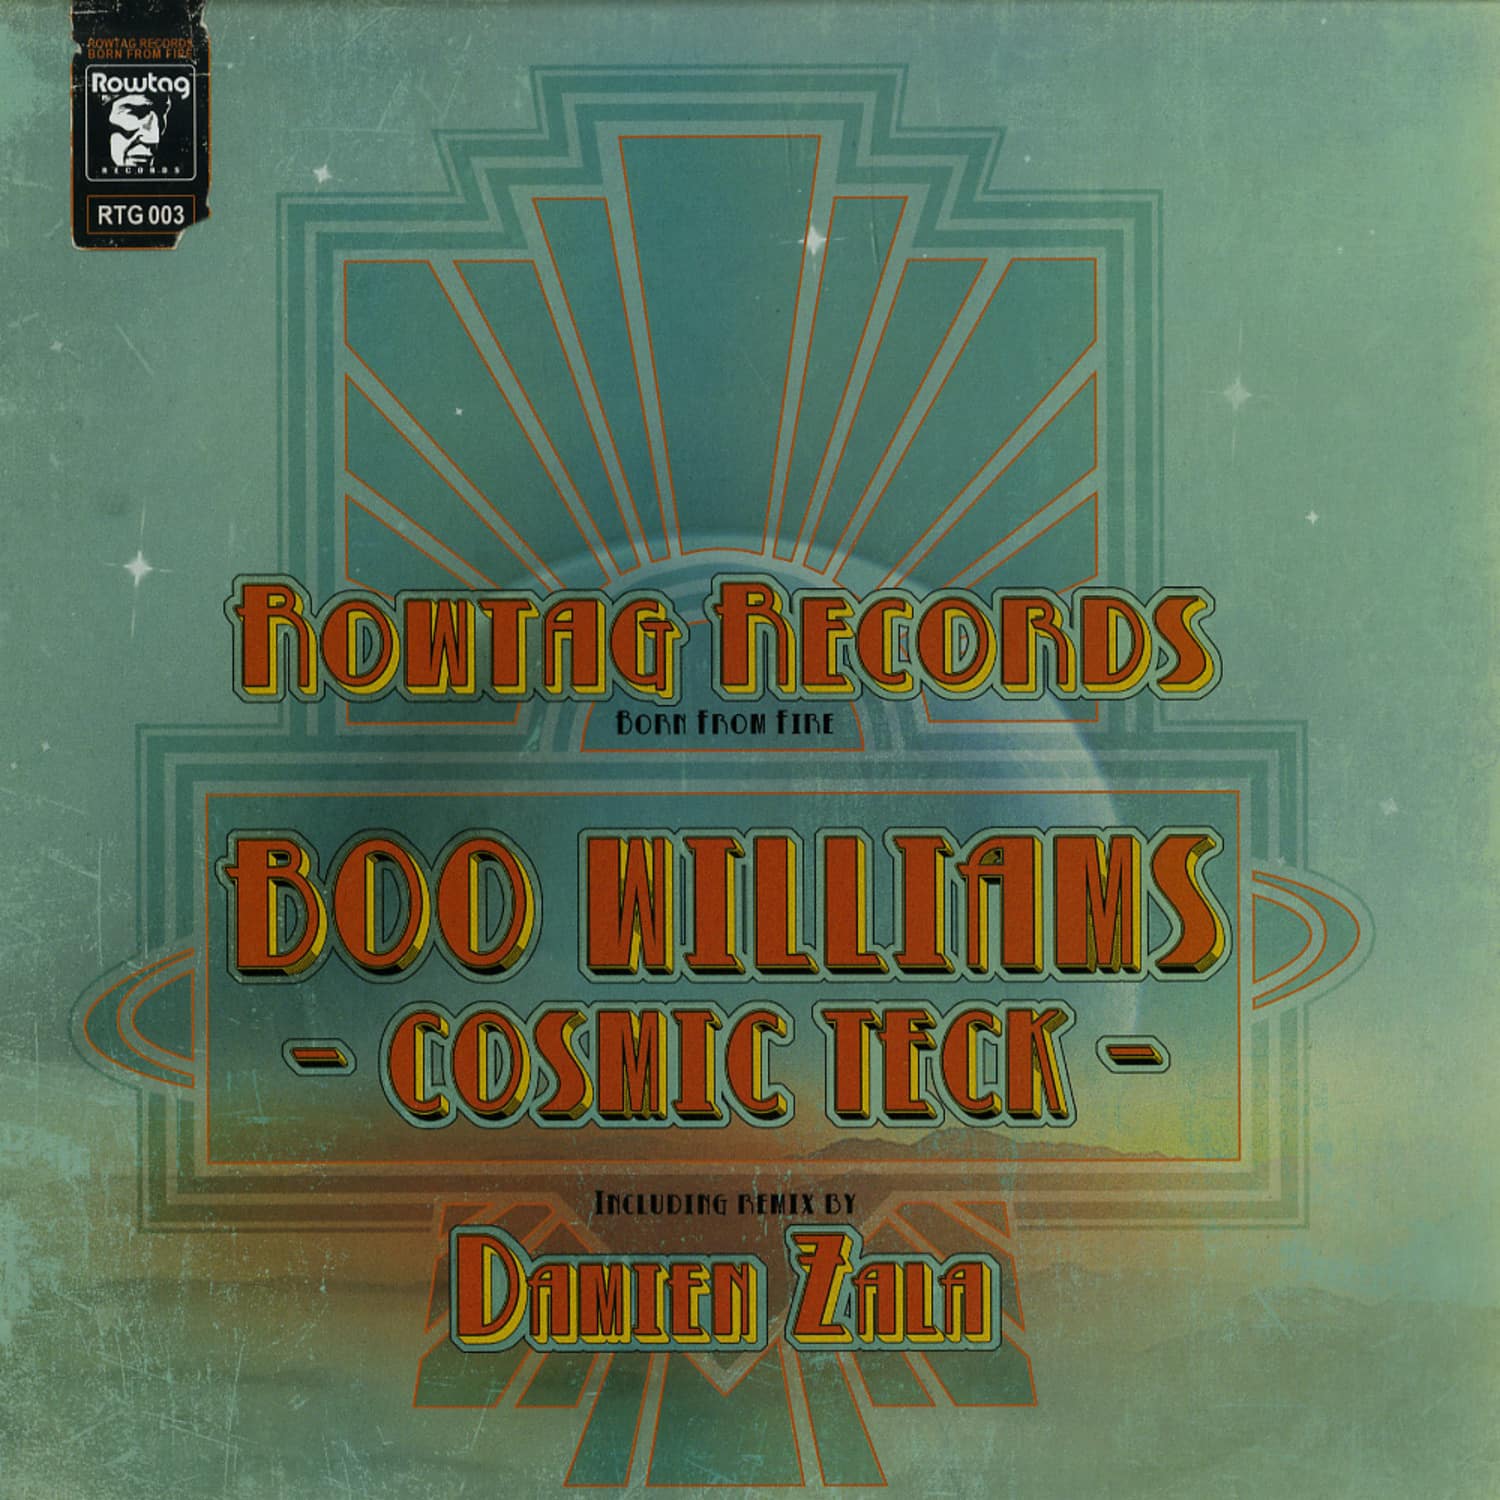 Boo Williams - COSMIC TECK EP 